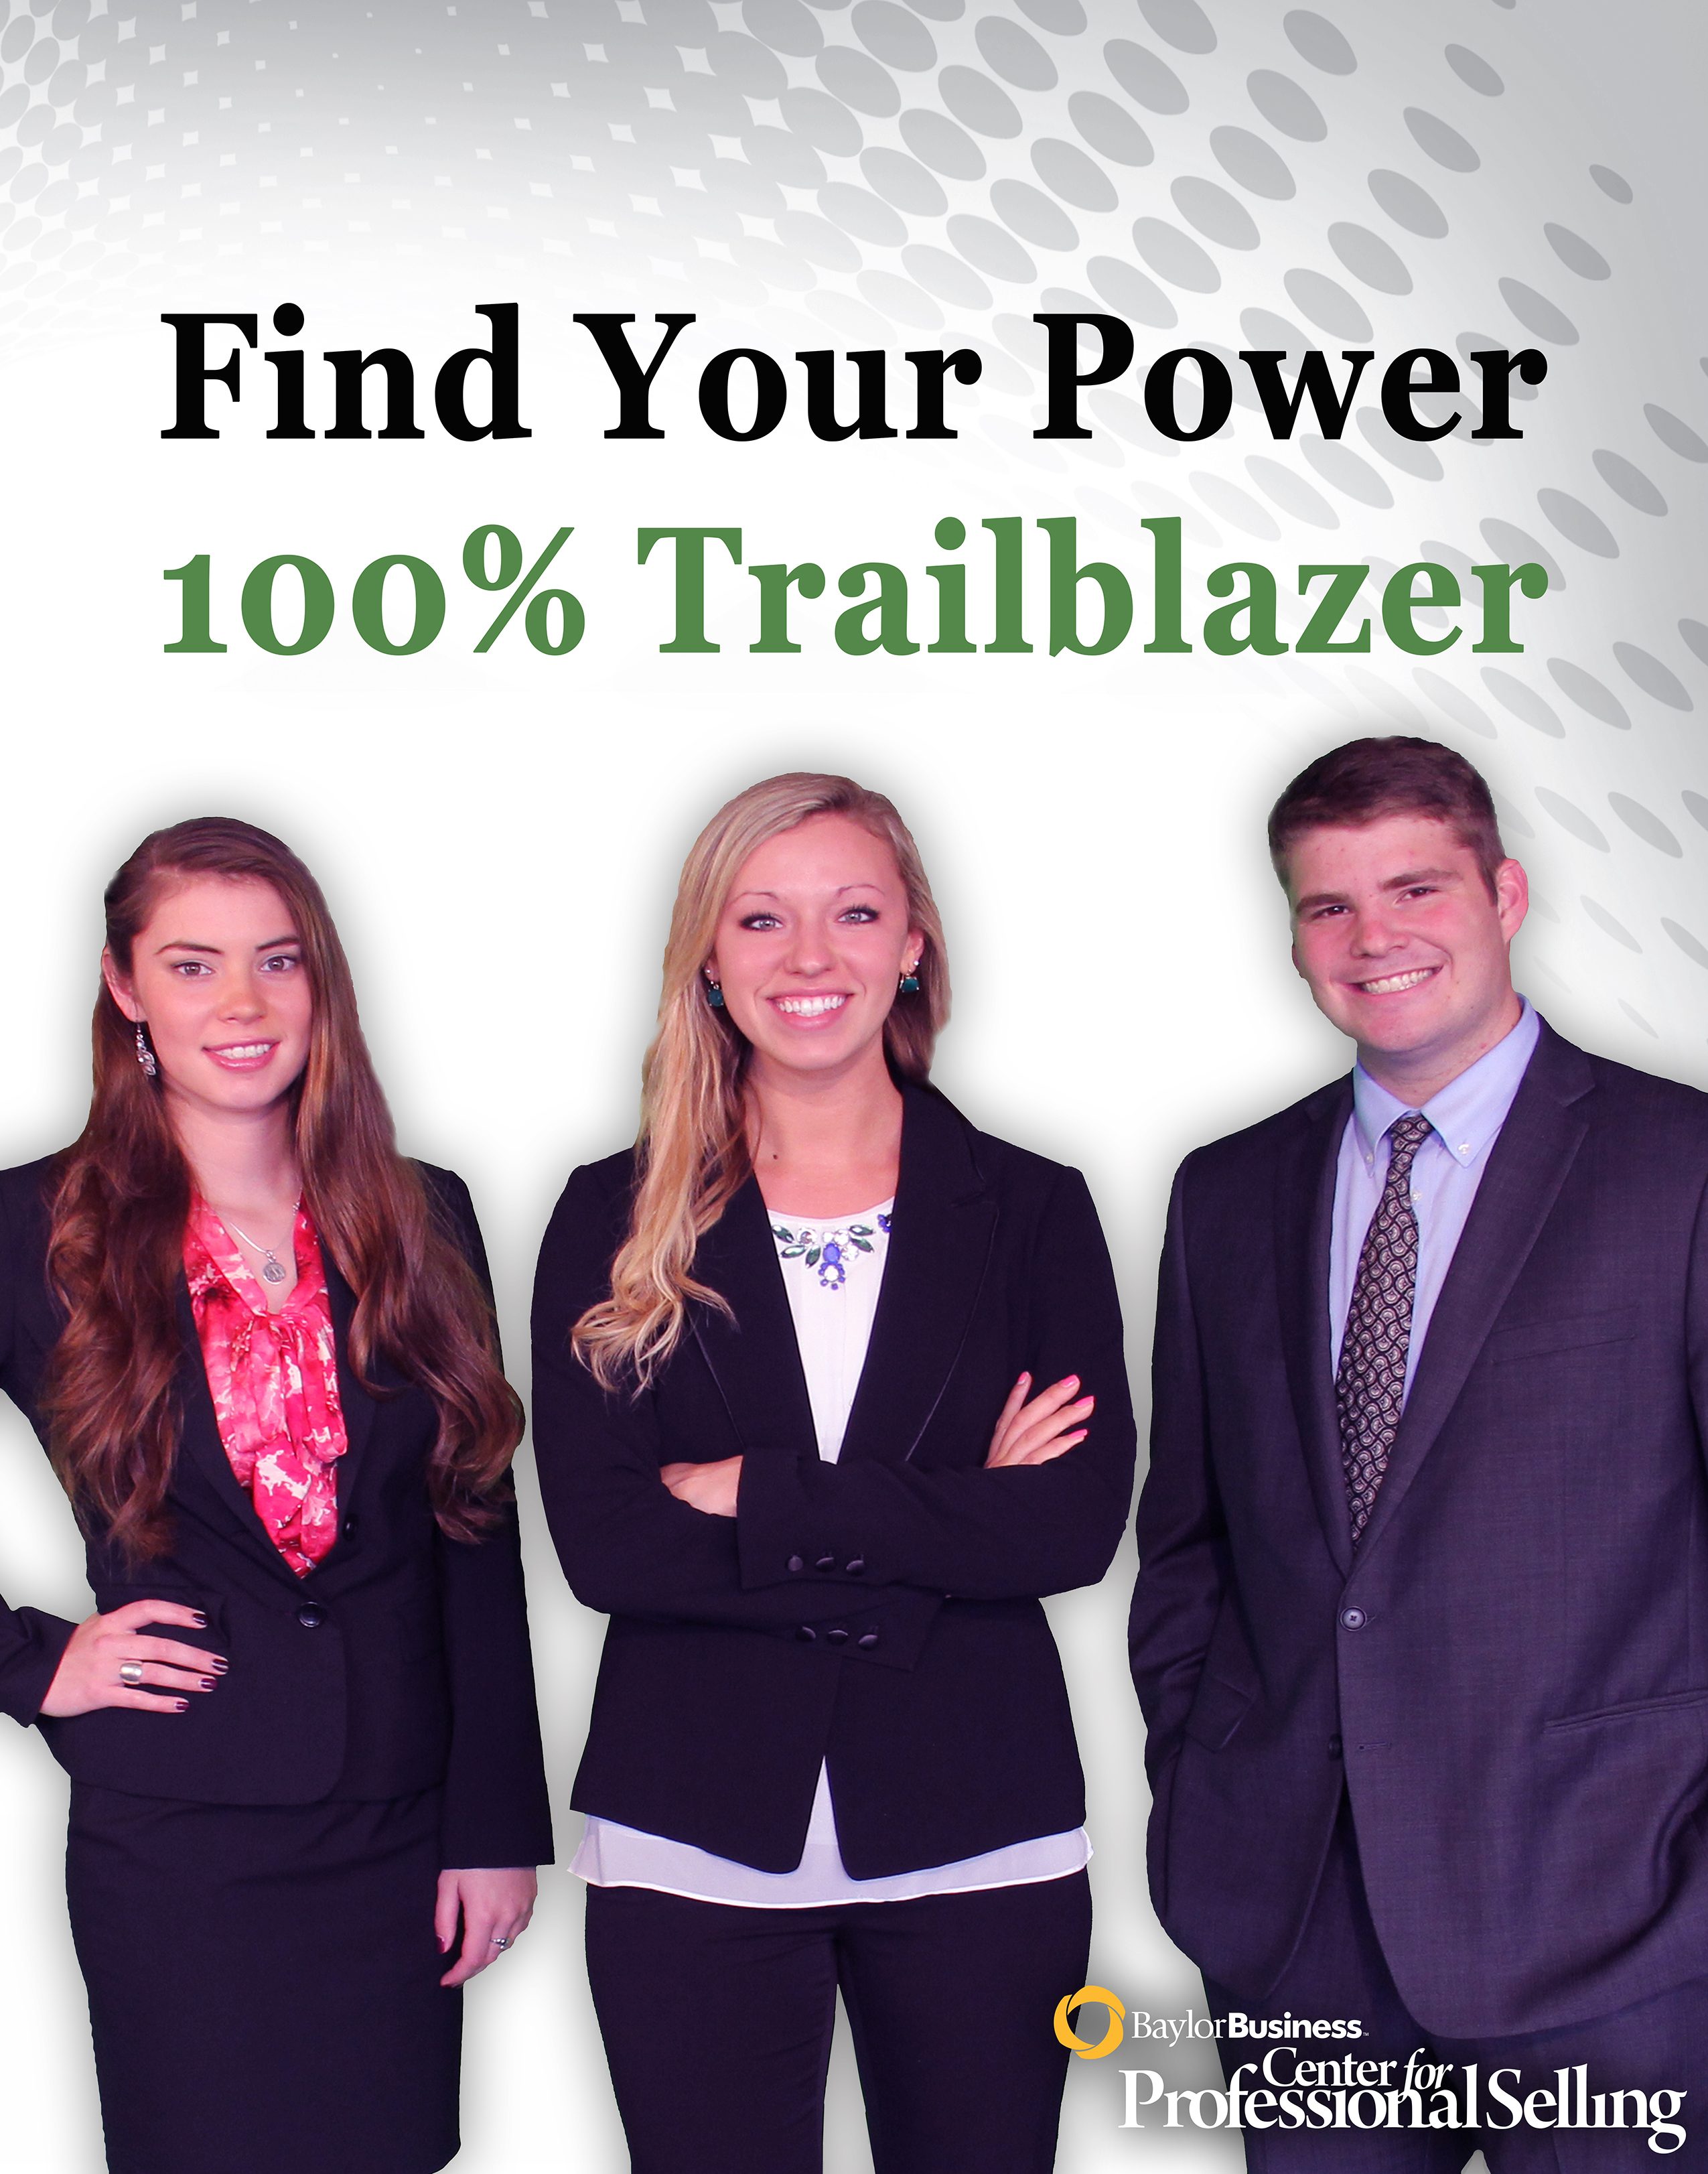 Find Your Power - 100% Trailblazer Ad 2